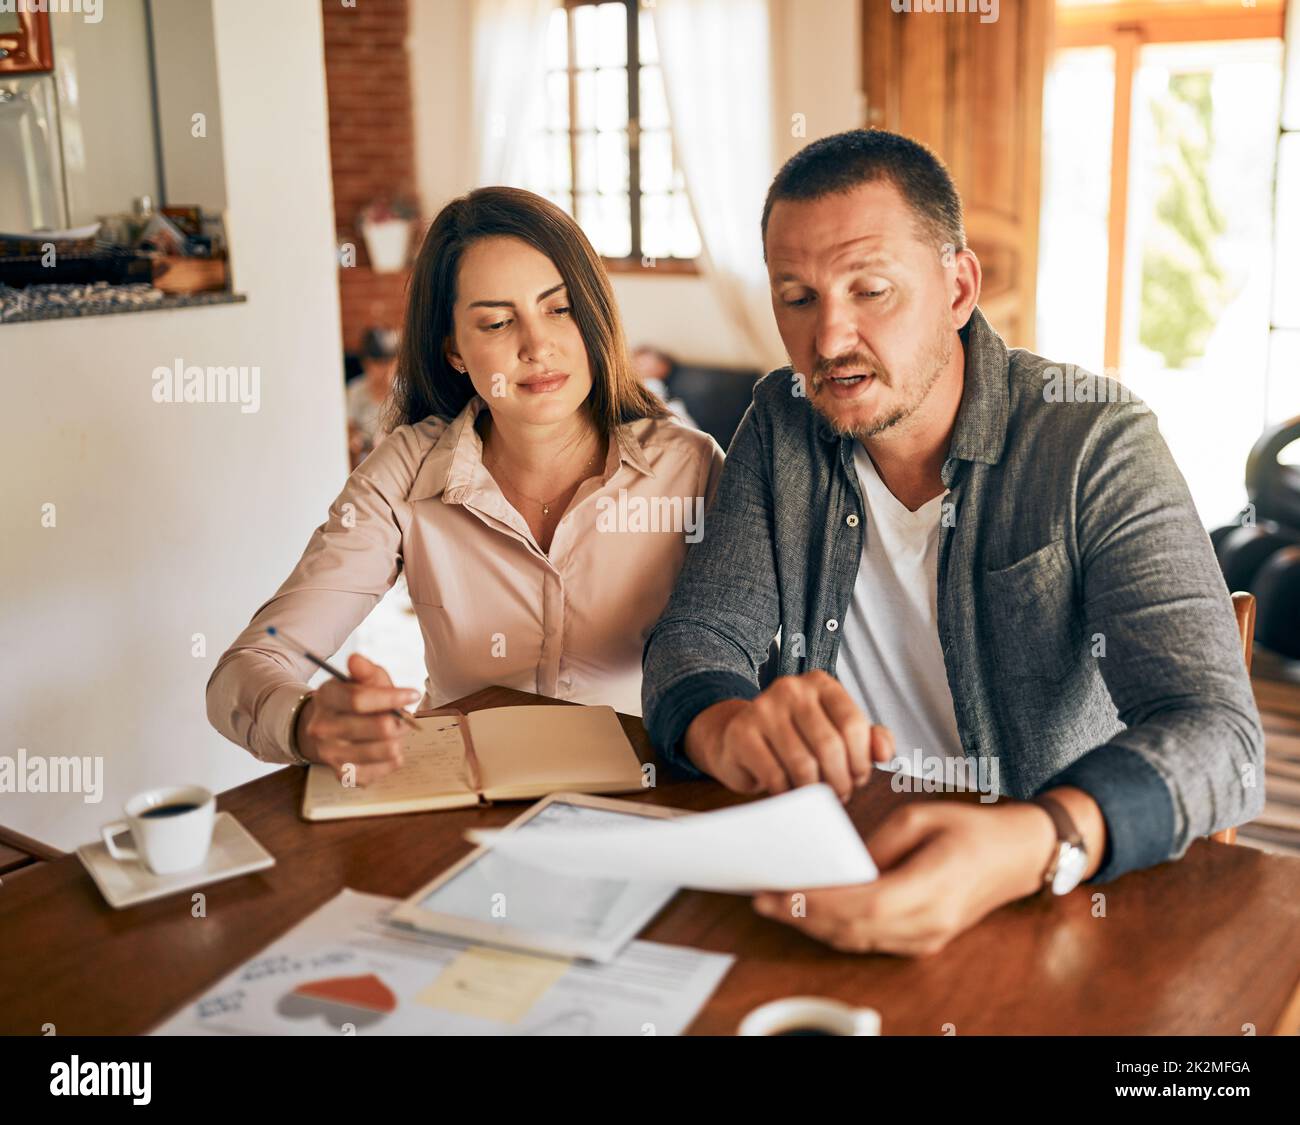 Familienplanung gemeinsam. Eine kurze Aufnahme eines Ehepaares, das zu Hause sein Budget plant. Stockfoto